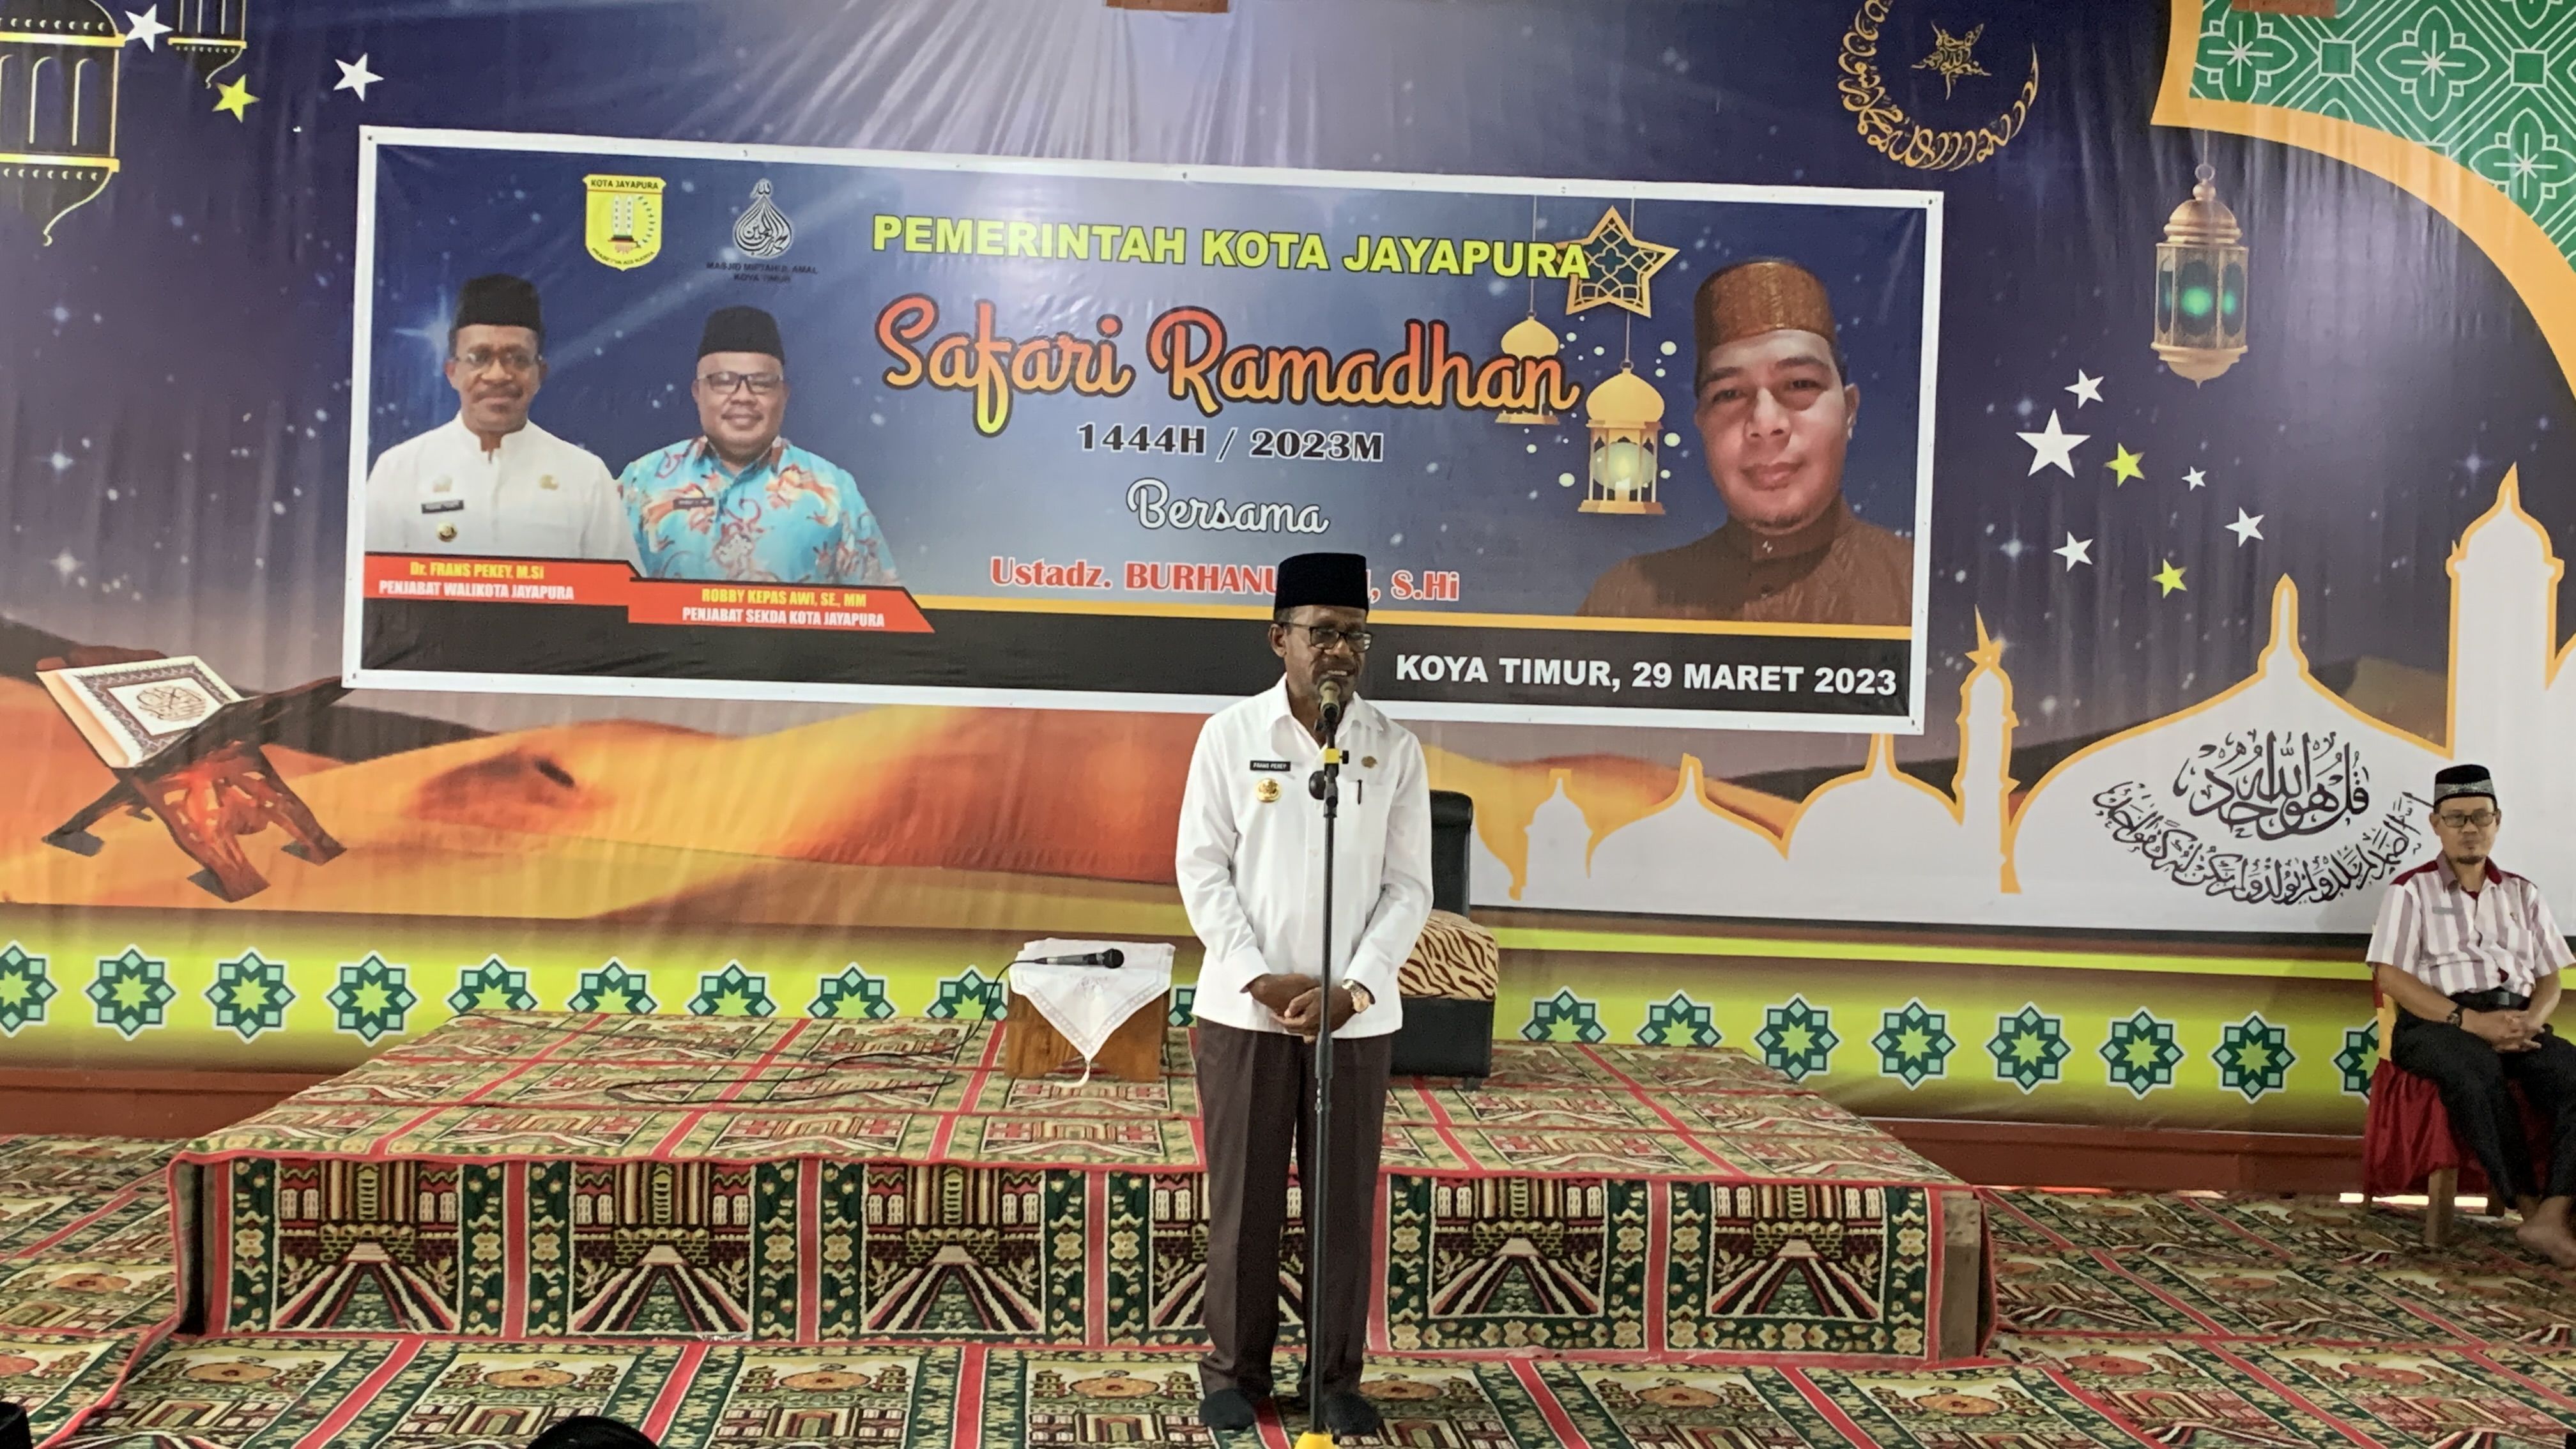 Momen Pj Walikota Jayapura saat memberikan sambutan dalam kegiatan Safari Ramadhan Pemerintah Kota Jayapura, di Masjid Miftahul Amal Koya Timur